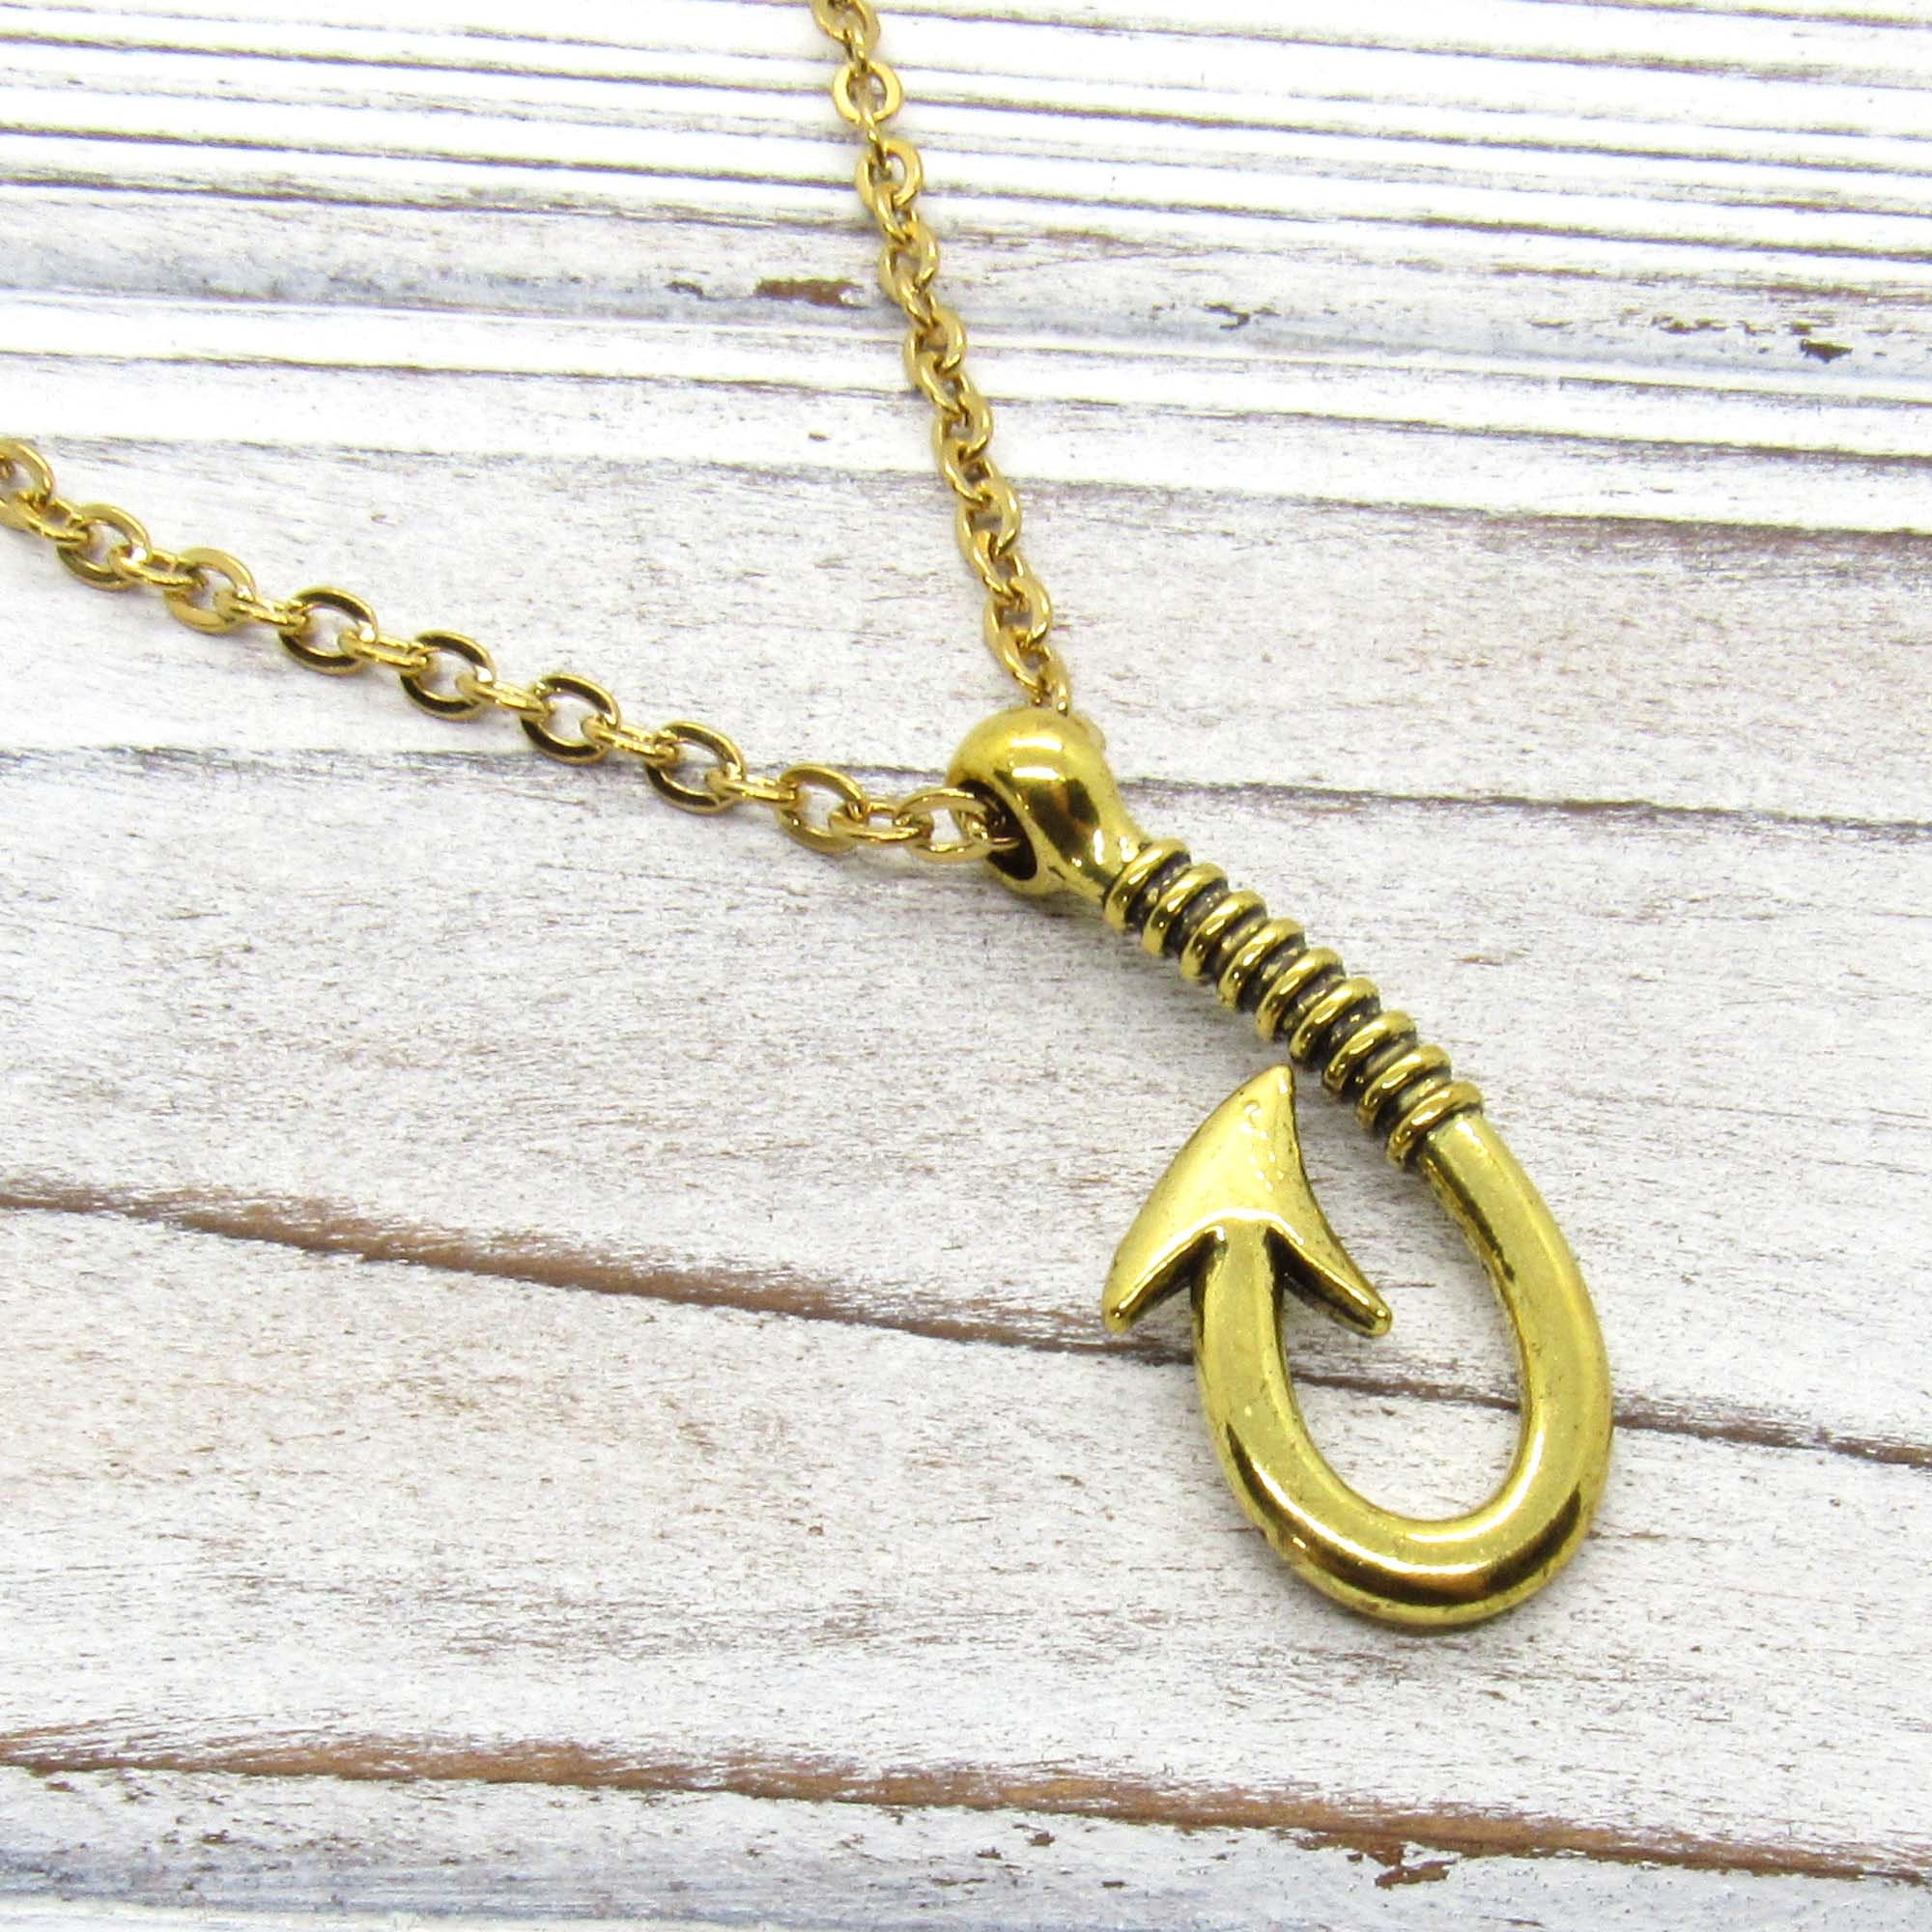 Antique Gold Tone Fish Hook Pendant Necklace, Fish Hook Charm Necklace,  Fisher Jewelry, Gift for Men, Men's Jewelry, Women's Jewelry -  Canada